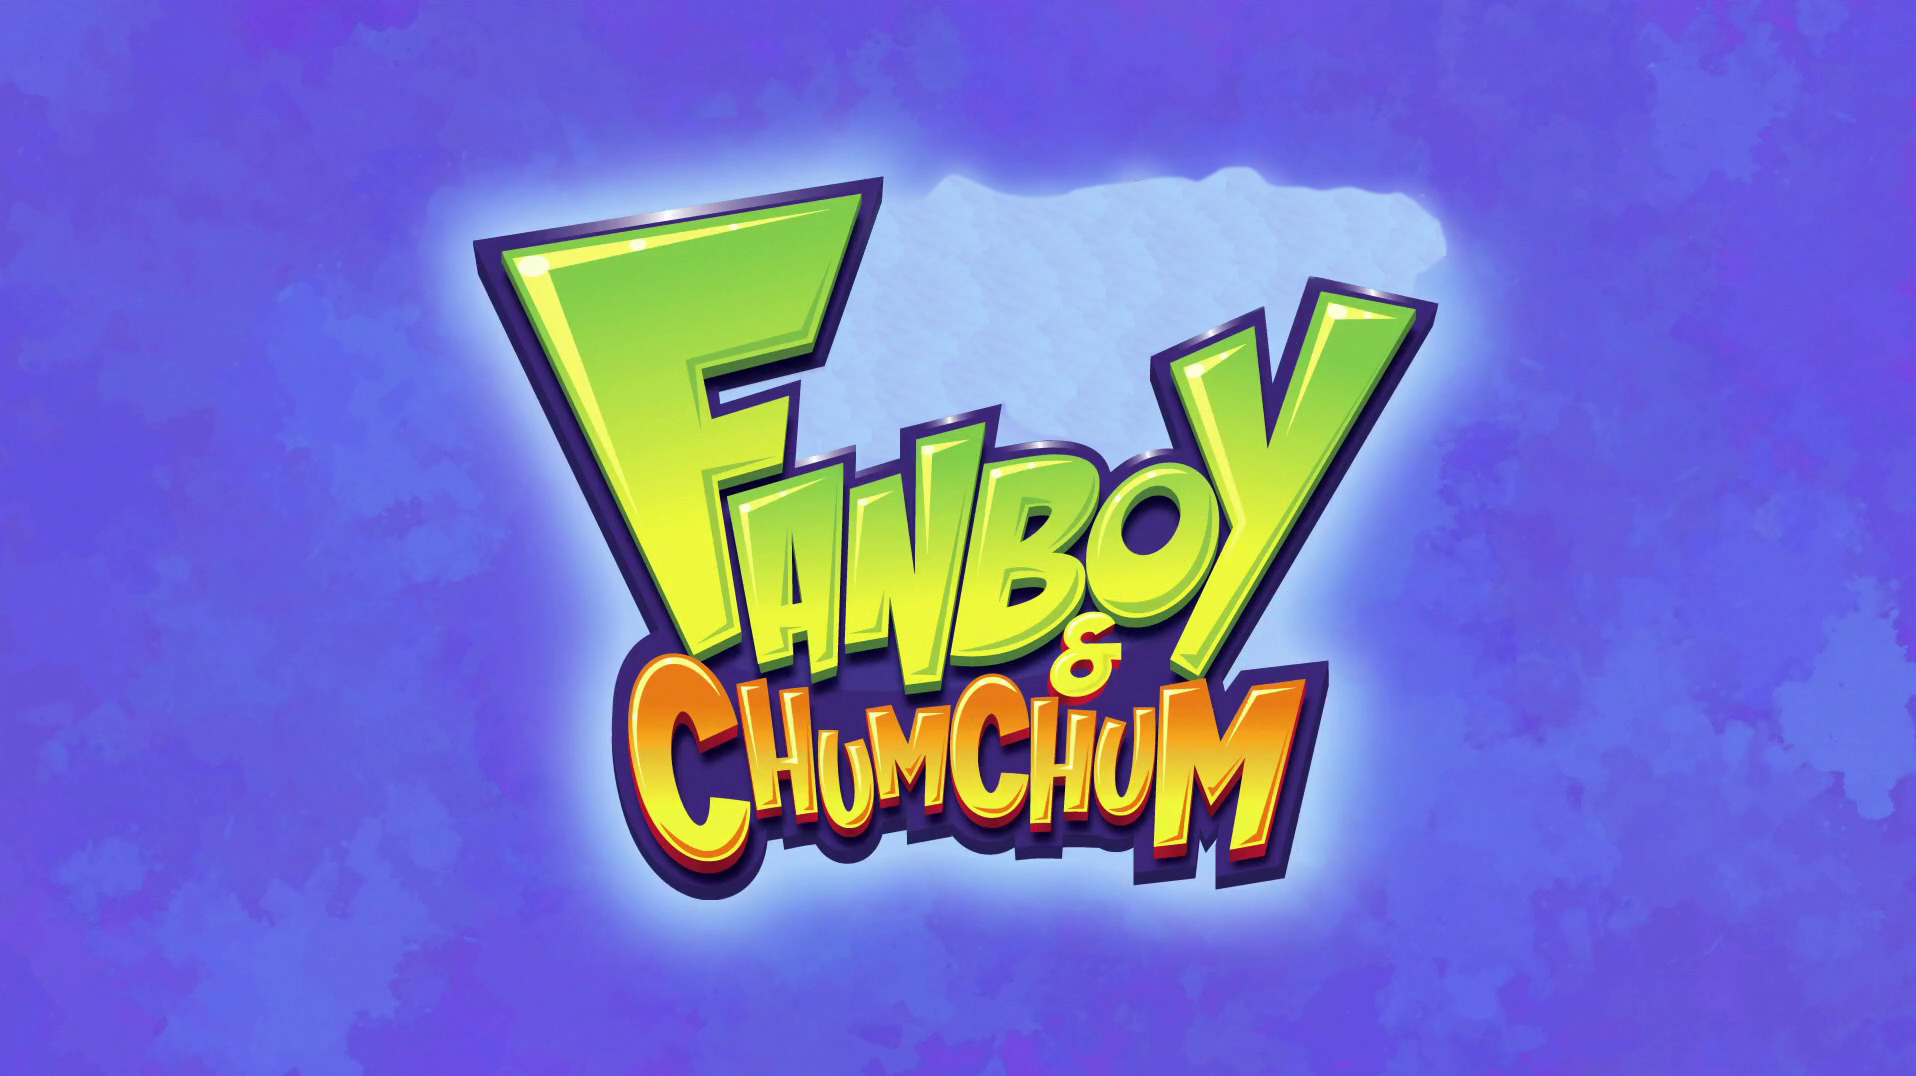 fanboy and chum chum - Fanboy And Chum Chum Fanboy Chum Chum N